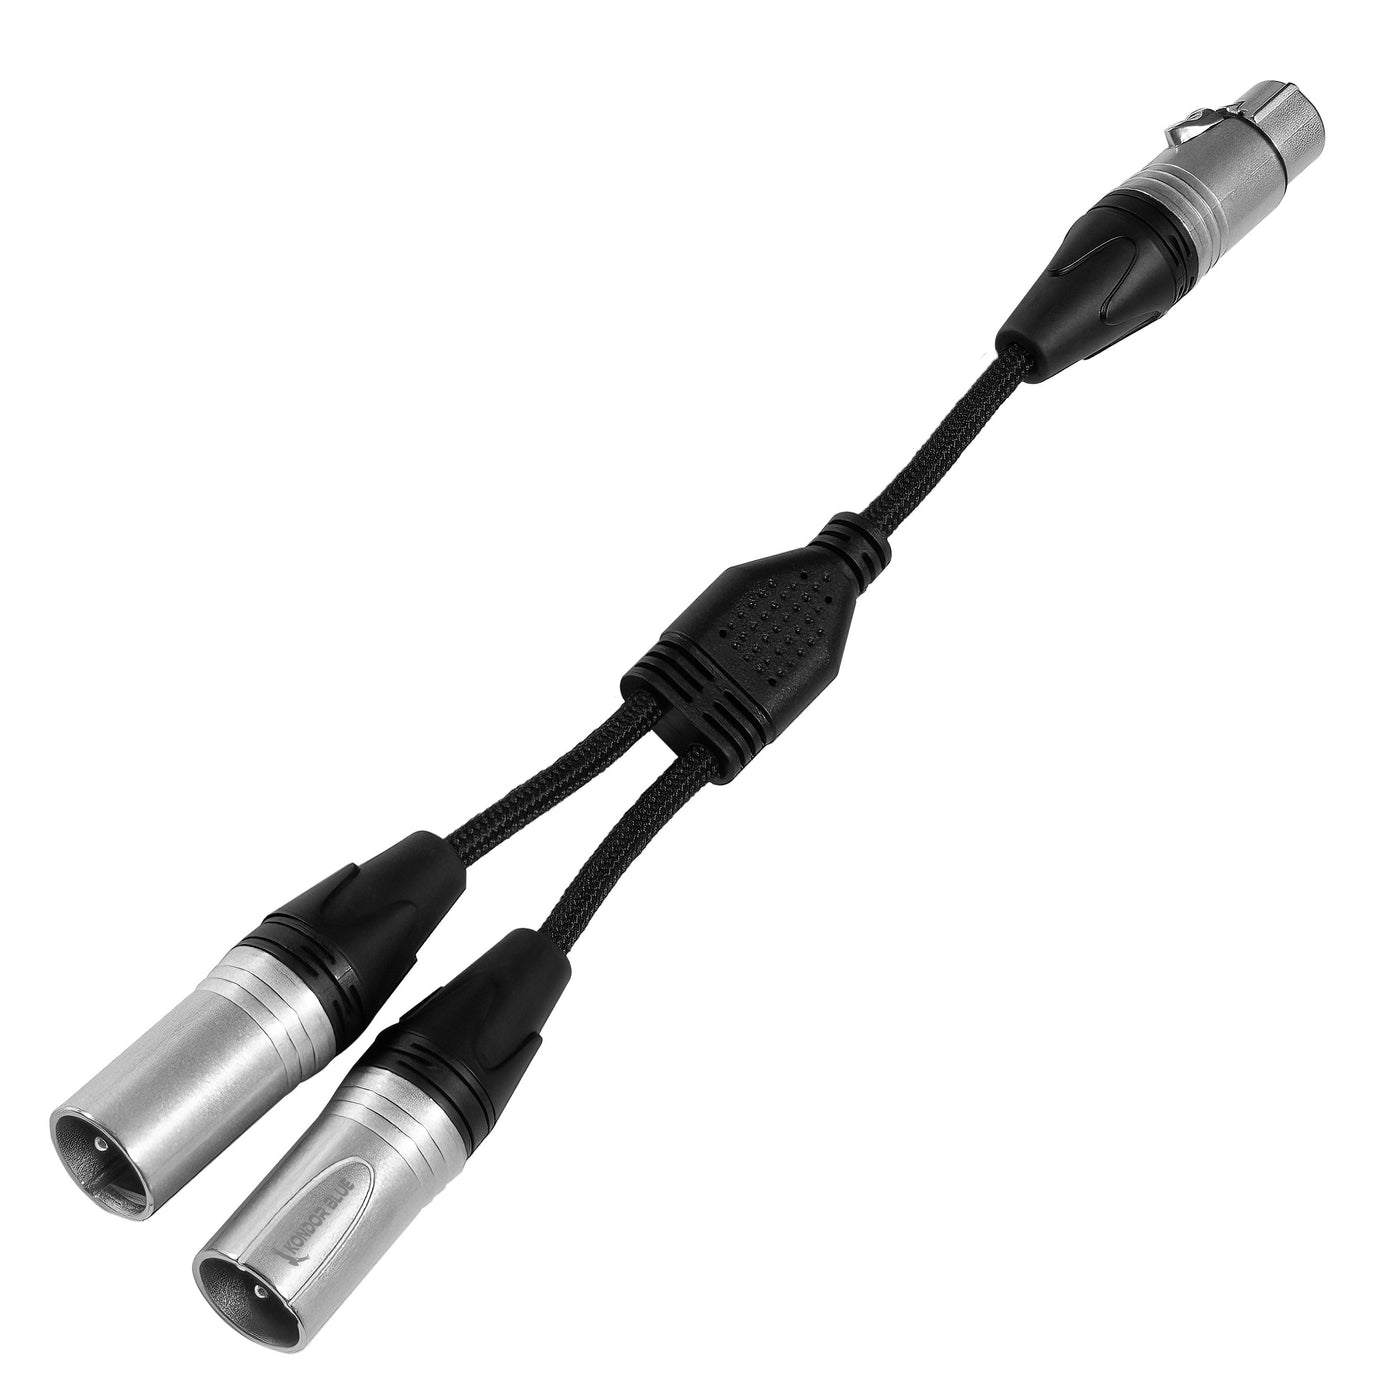 Dual Male XLR To Female XLR Audio Y Splitter Cable